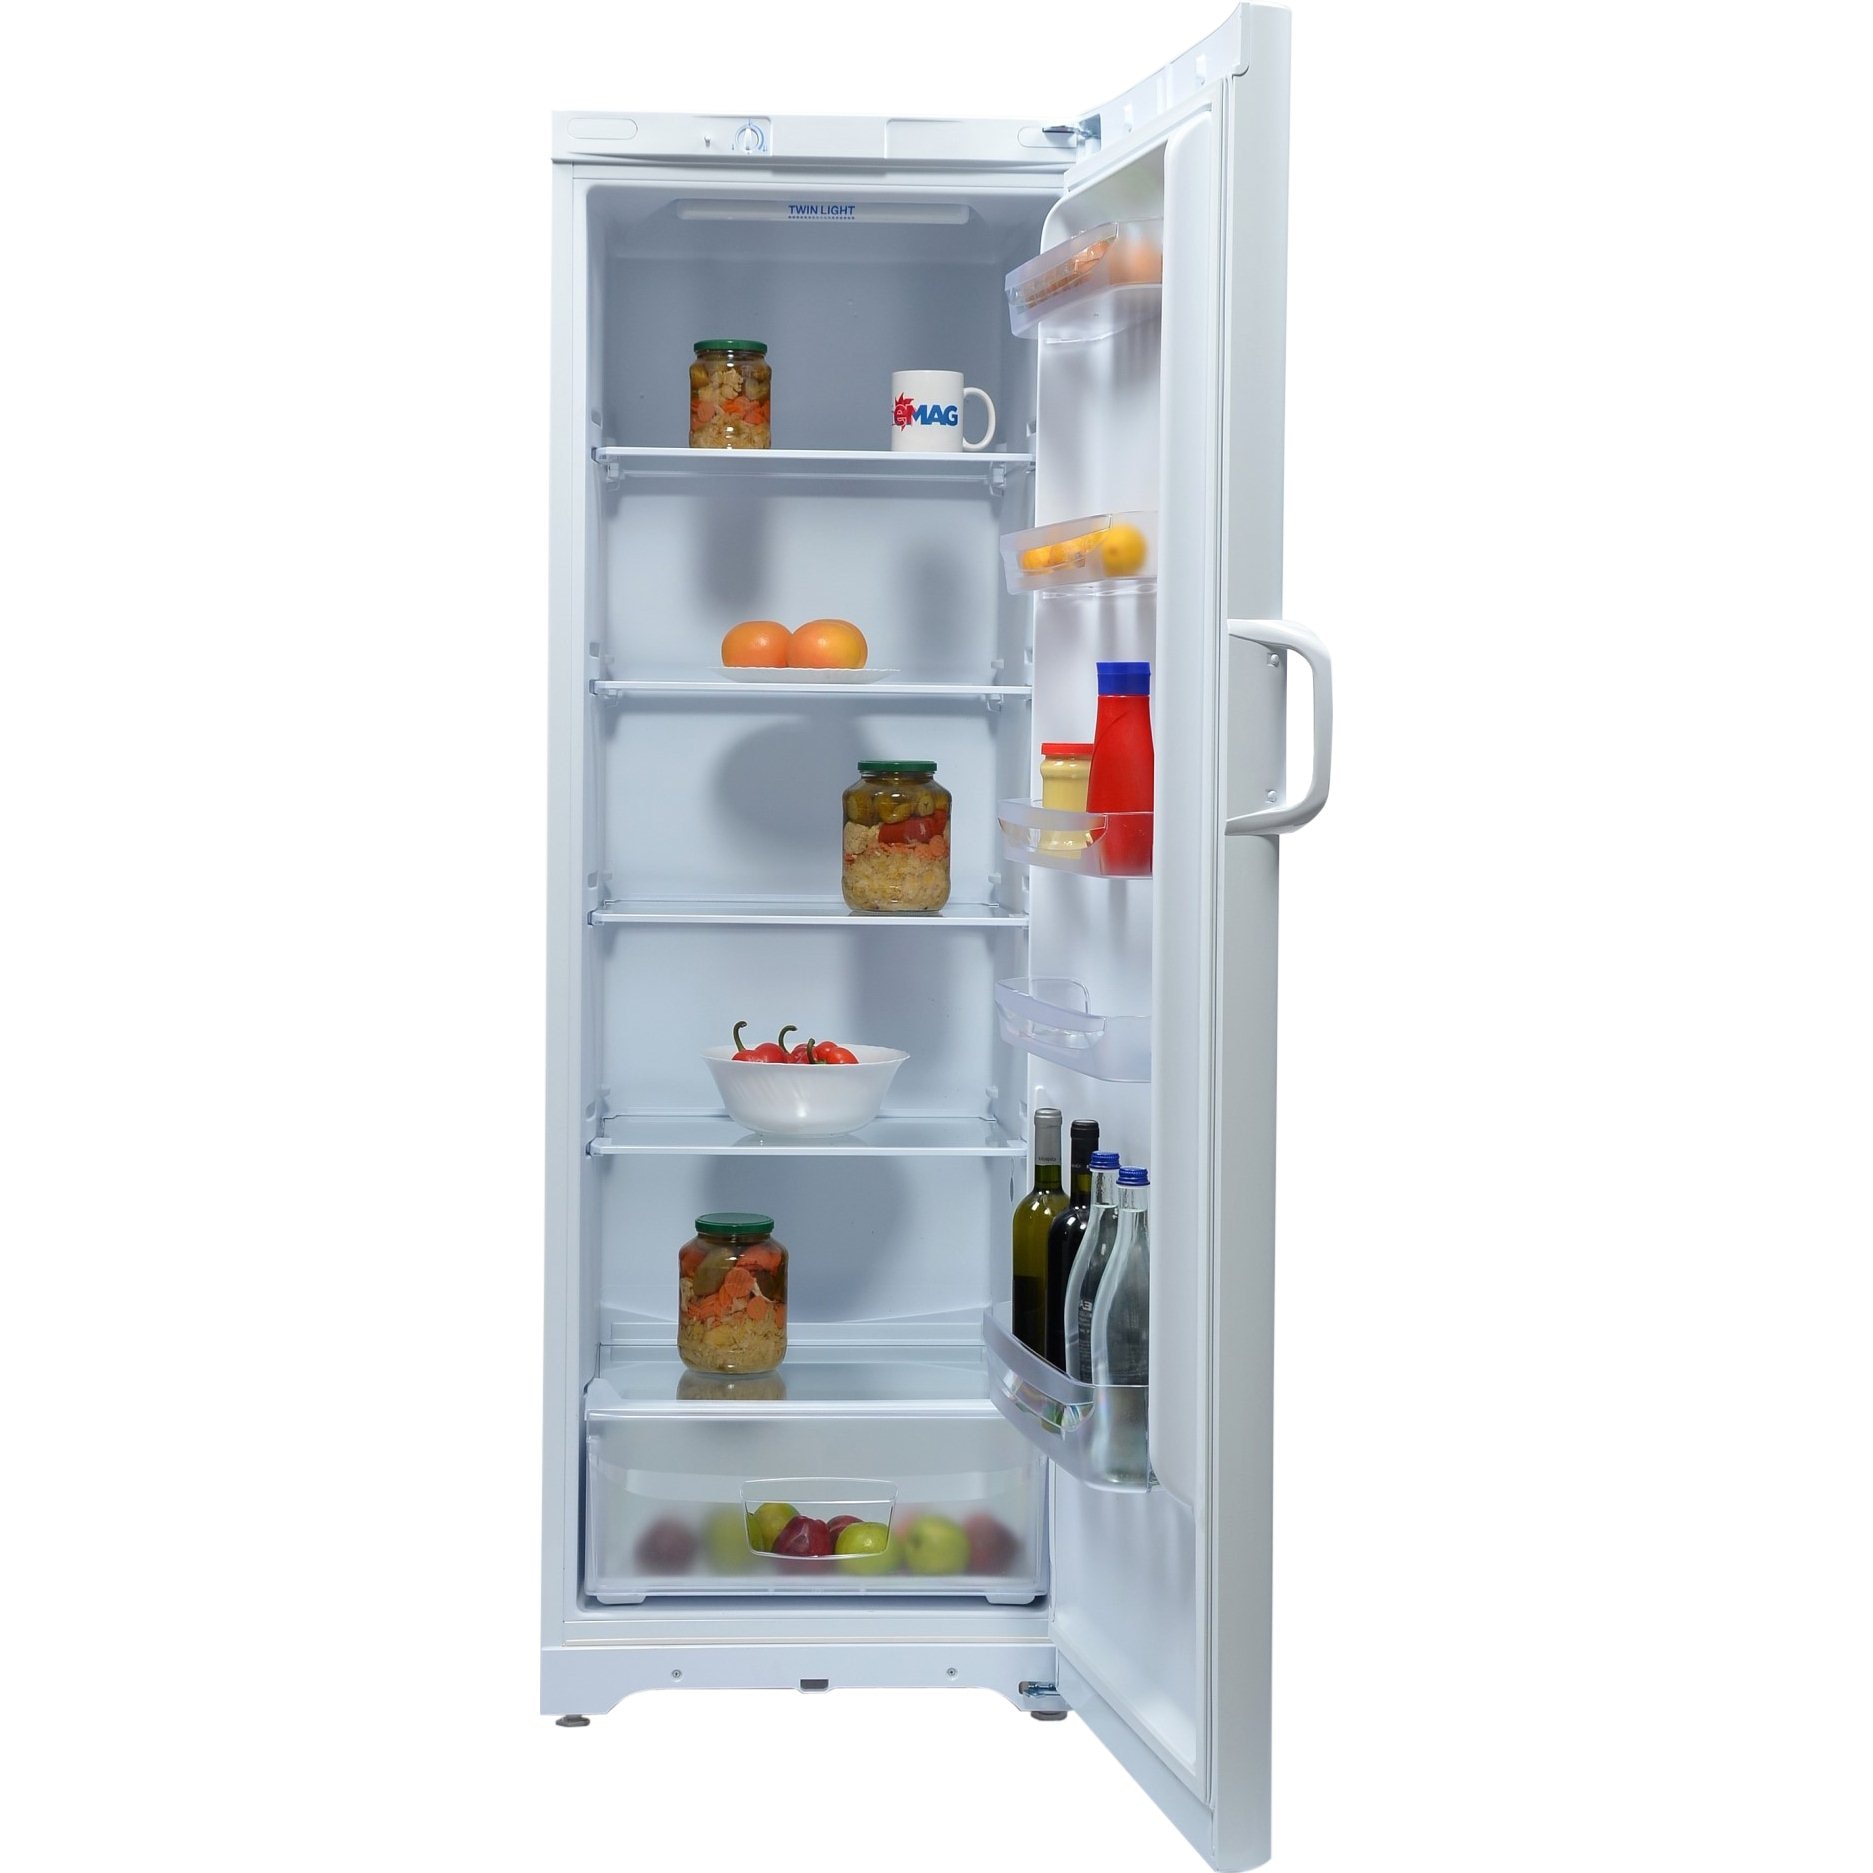 Хорошие недорогие холодильники ноу фрост. Холодильник Индезит двухкамерный ноу Фрост. Недорогий холодильники Ной Фрост.